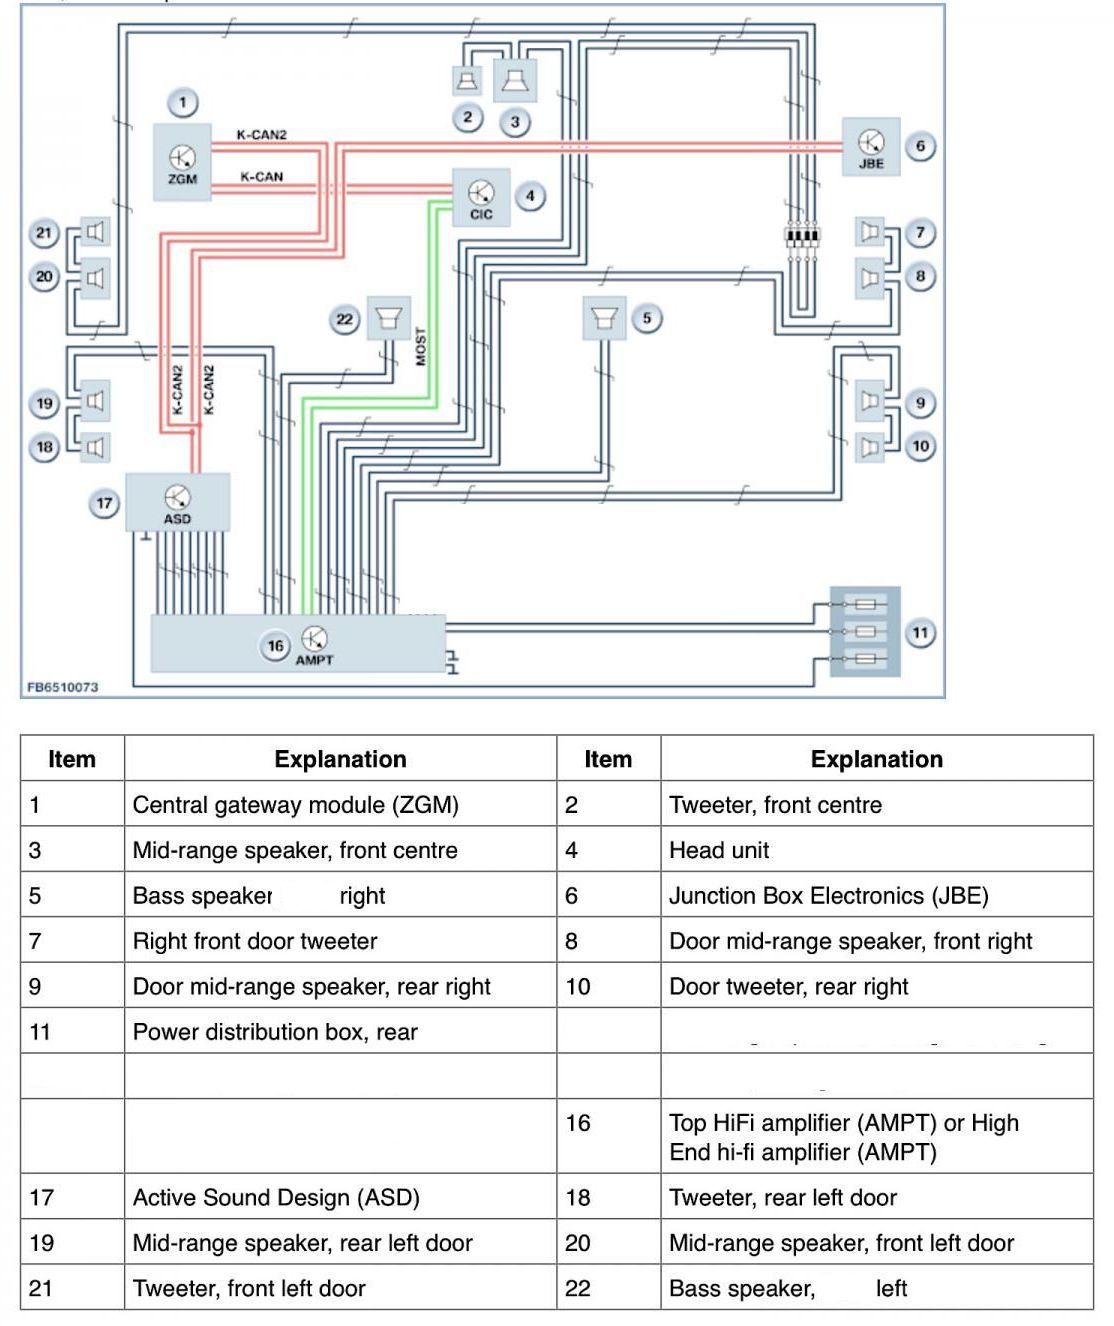 AMP ASD Diagram Supra.jpg